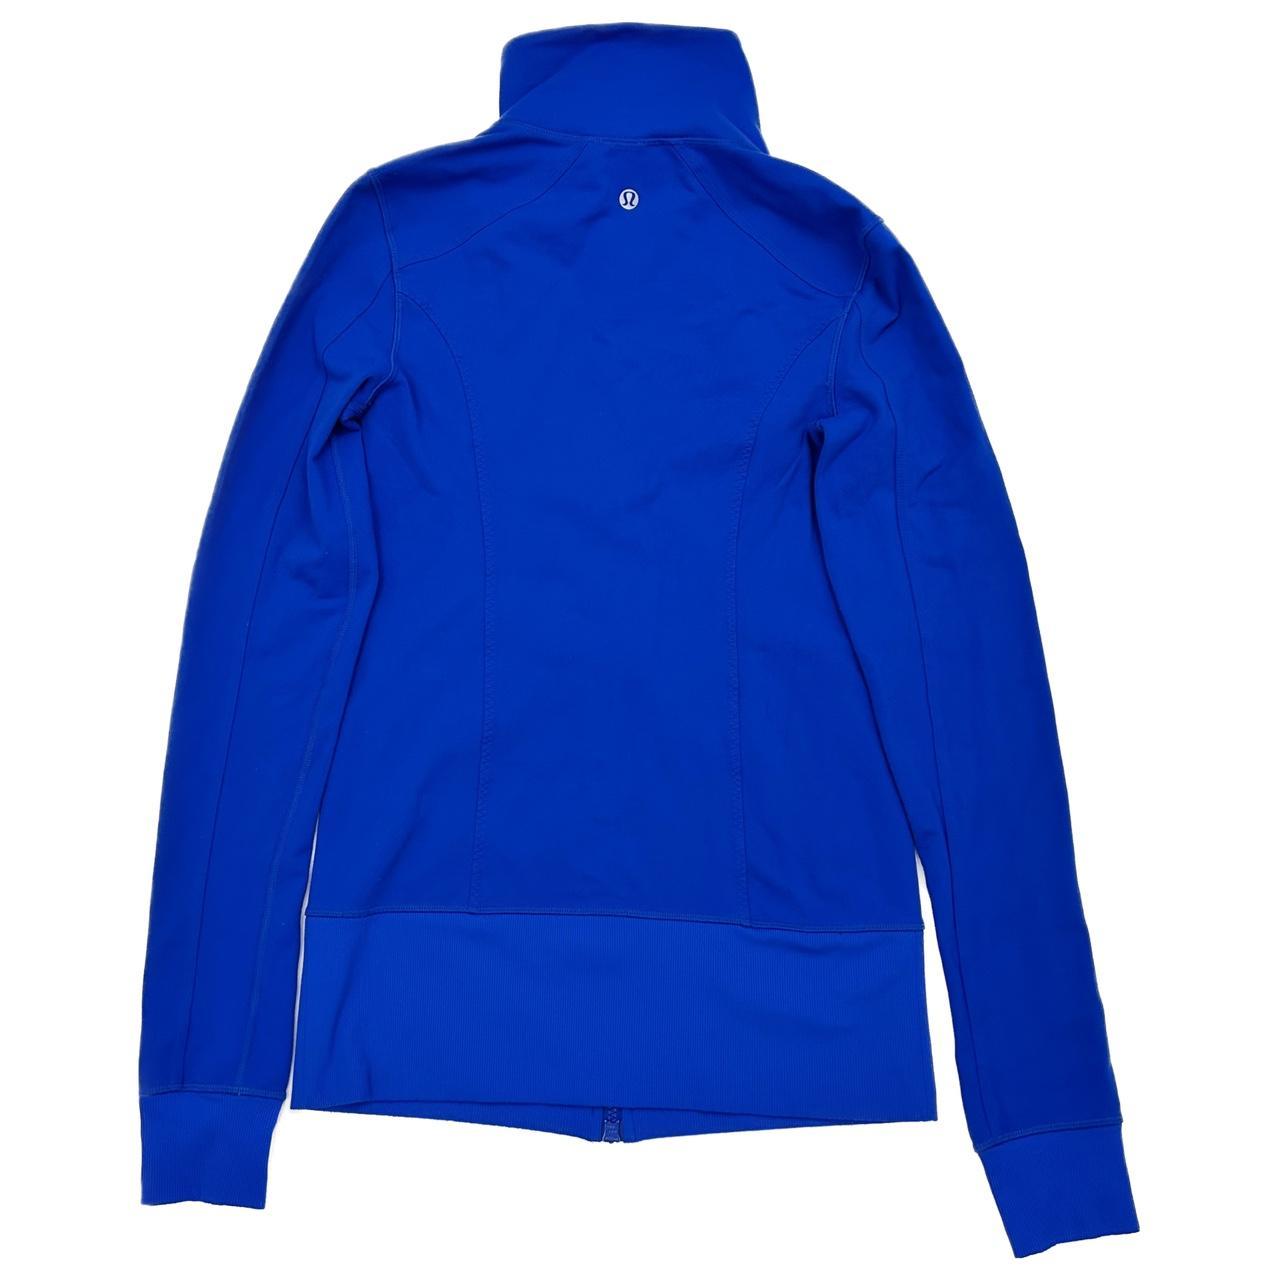 Lululemon Athletica Zip Up Jacket – Hudson Thrift Shoppe